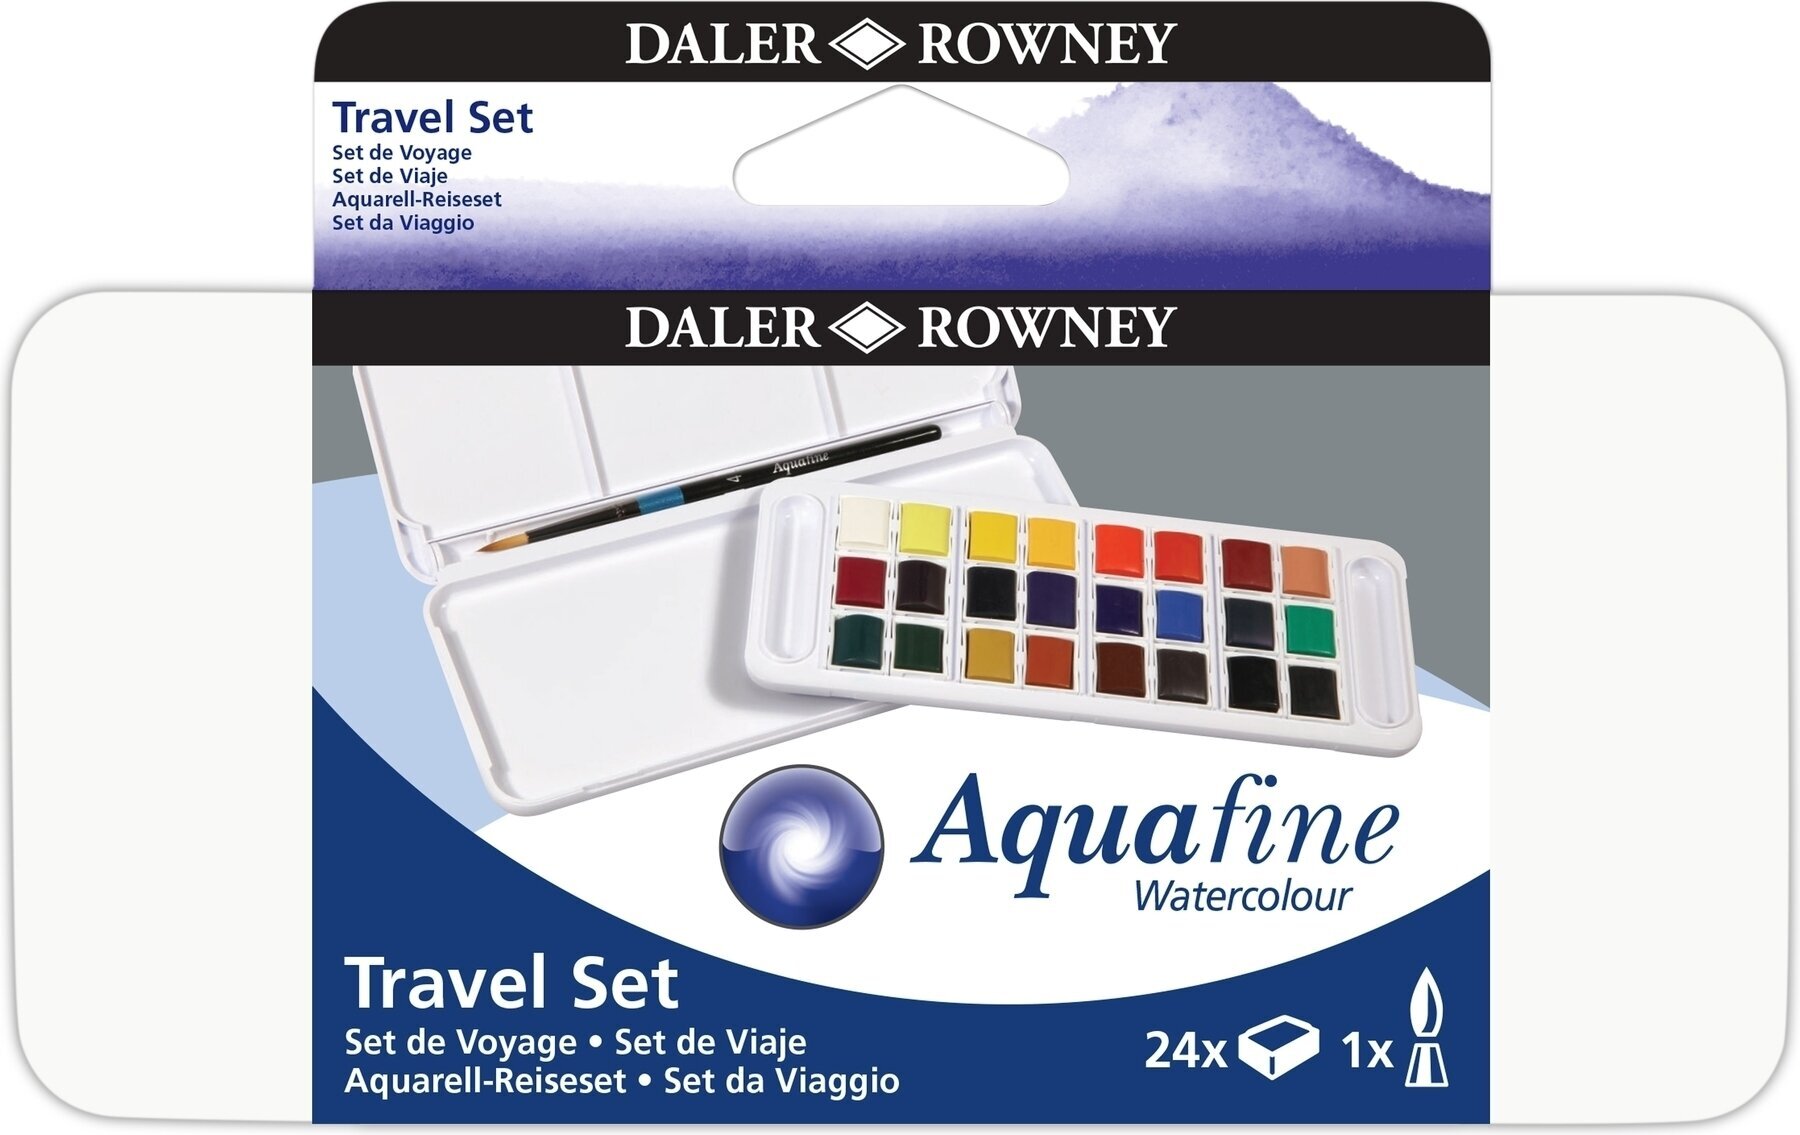 Watercolour Paint Daler Rowney Aquafine Set of Watercolour Paints